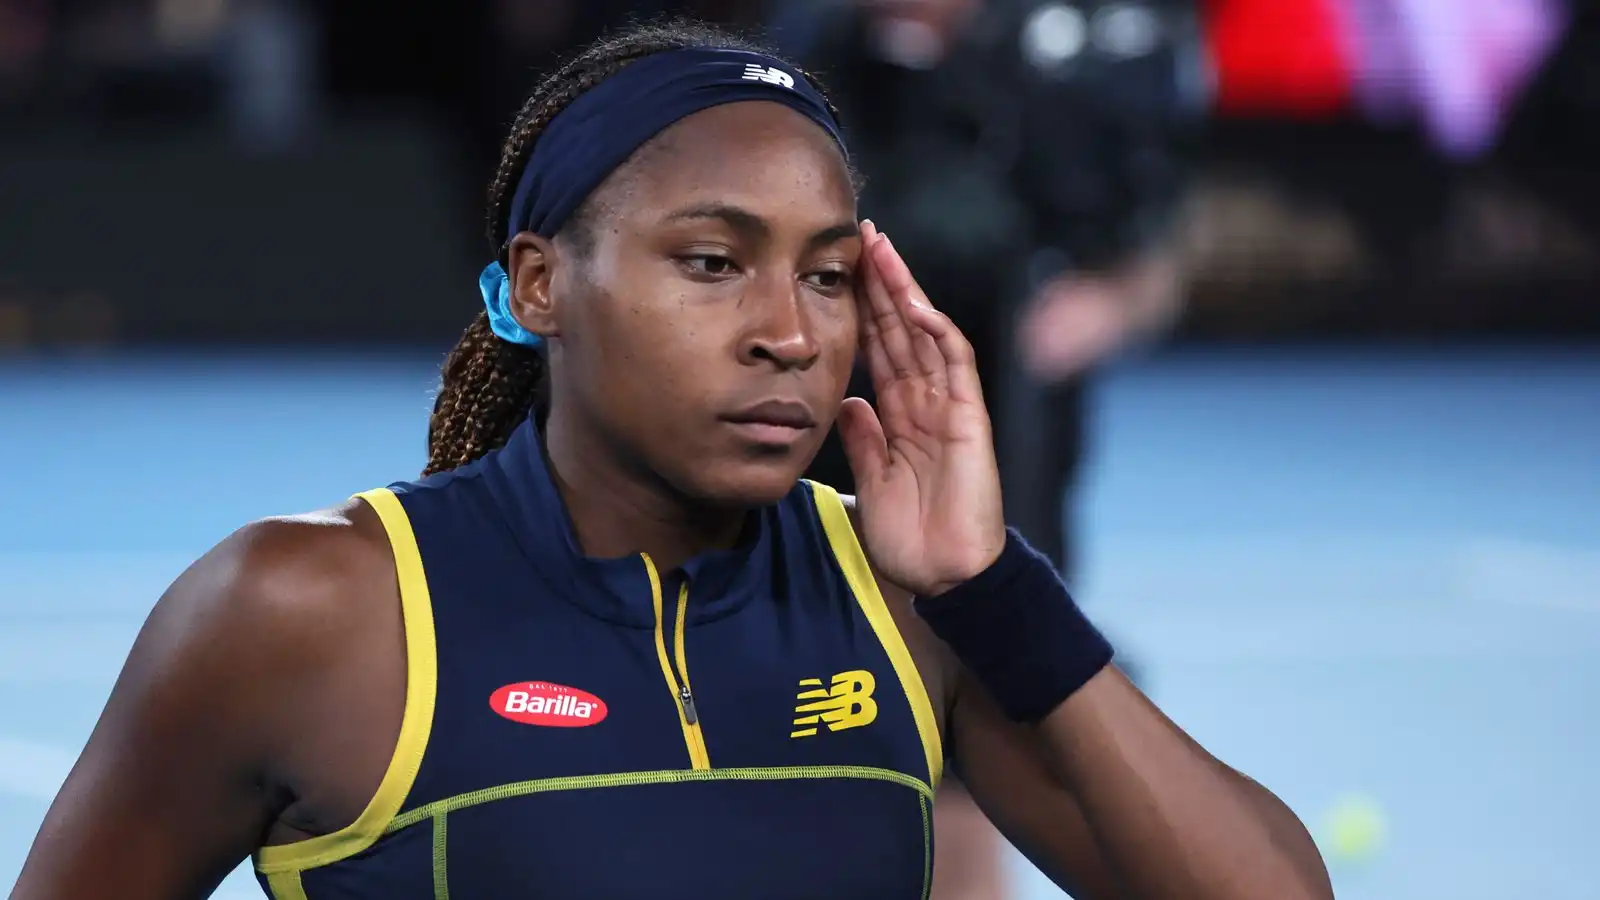 Abierto de Australia: Coco Gauff elogia a Serena Williams y Maria Sharapova por no dejar que un partido defina sus carreras